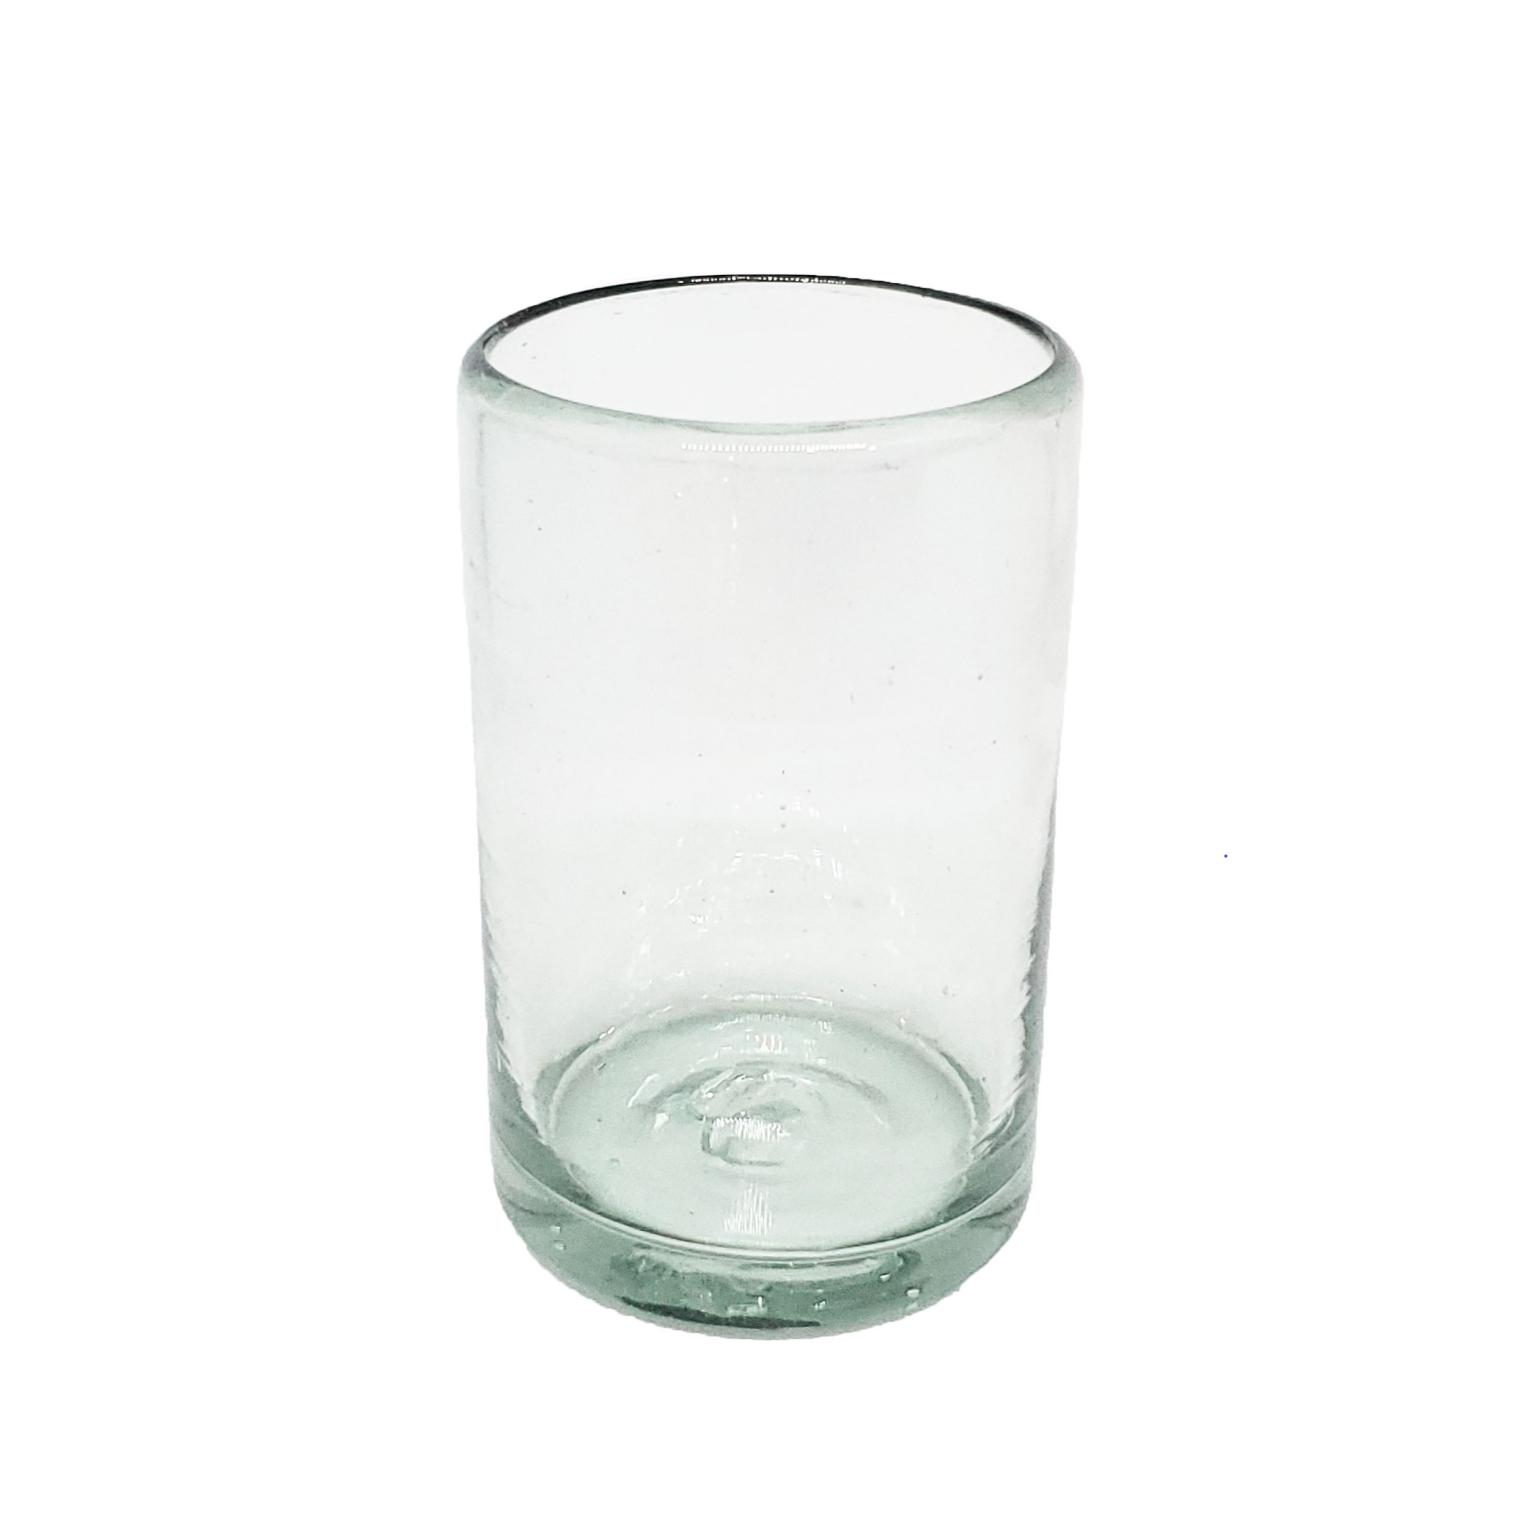 Novedades / Juego de 6 vasos Jugo 9oz Transparentes, 9 oz, Vidrio Reciclado, Libre de Plomo y Toxinas / stos artesanales vasos le darn un toque clsico a su bebida favorita.